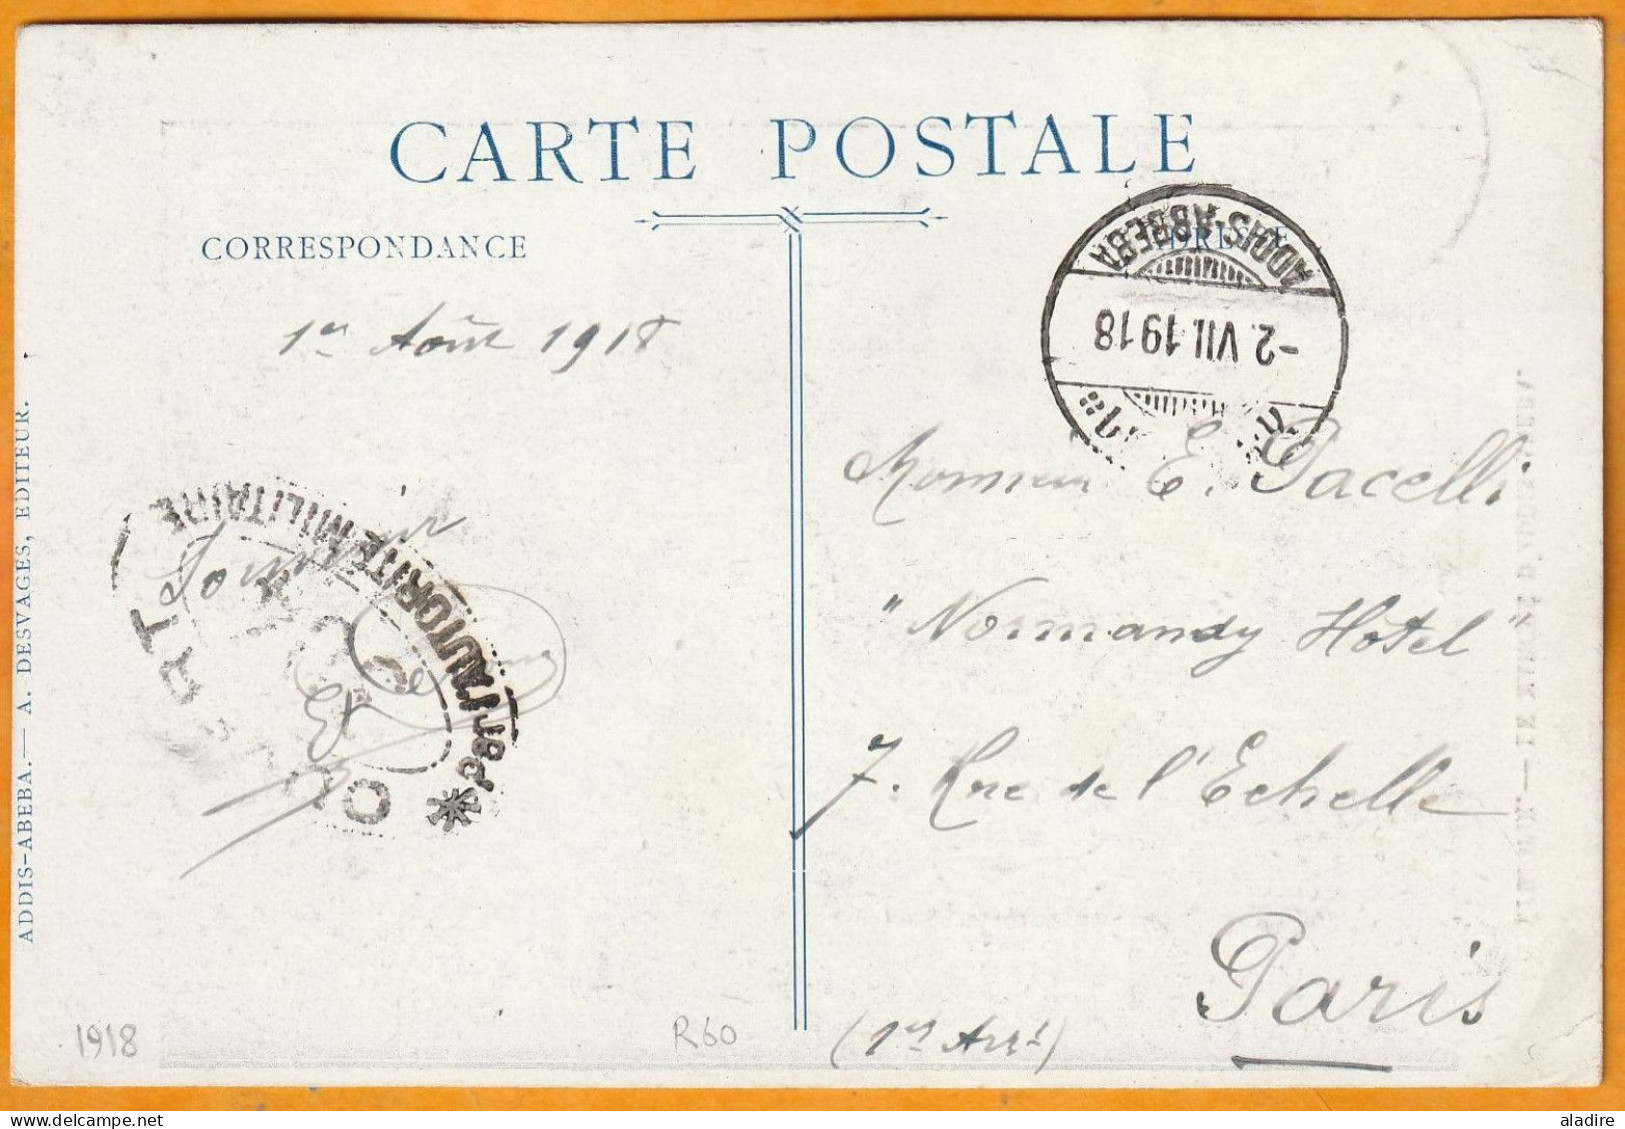 1918 - Carte Postale D'ADDIS ABBEBA, Ethiopie Vers PARIS, France - Timbre 1/2 Guerche Seul - Censure - Ethiopia